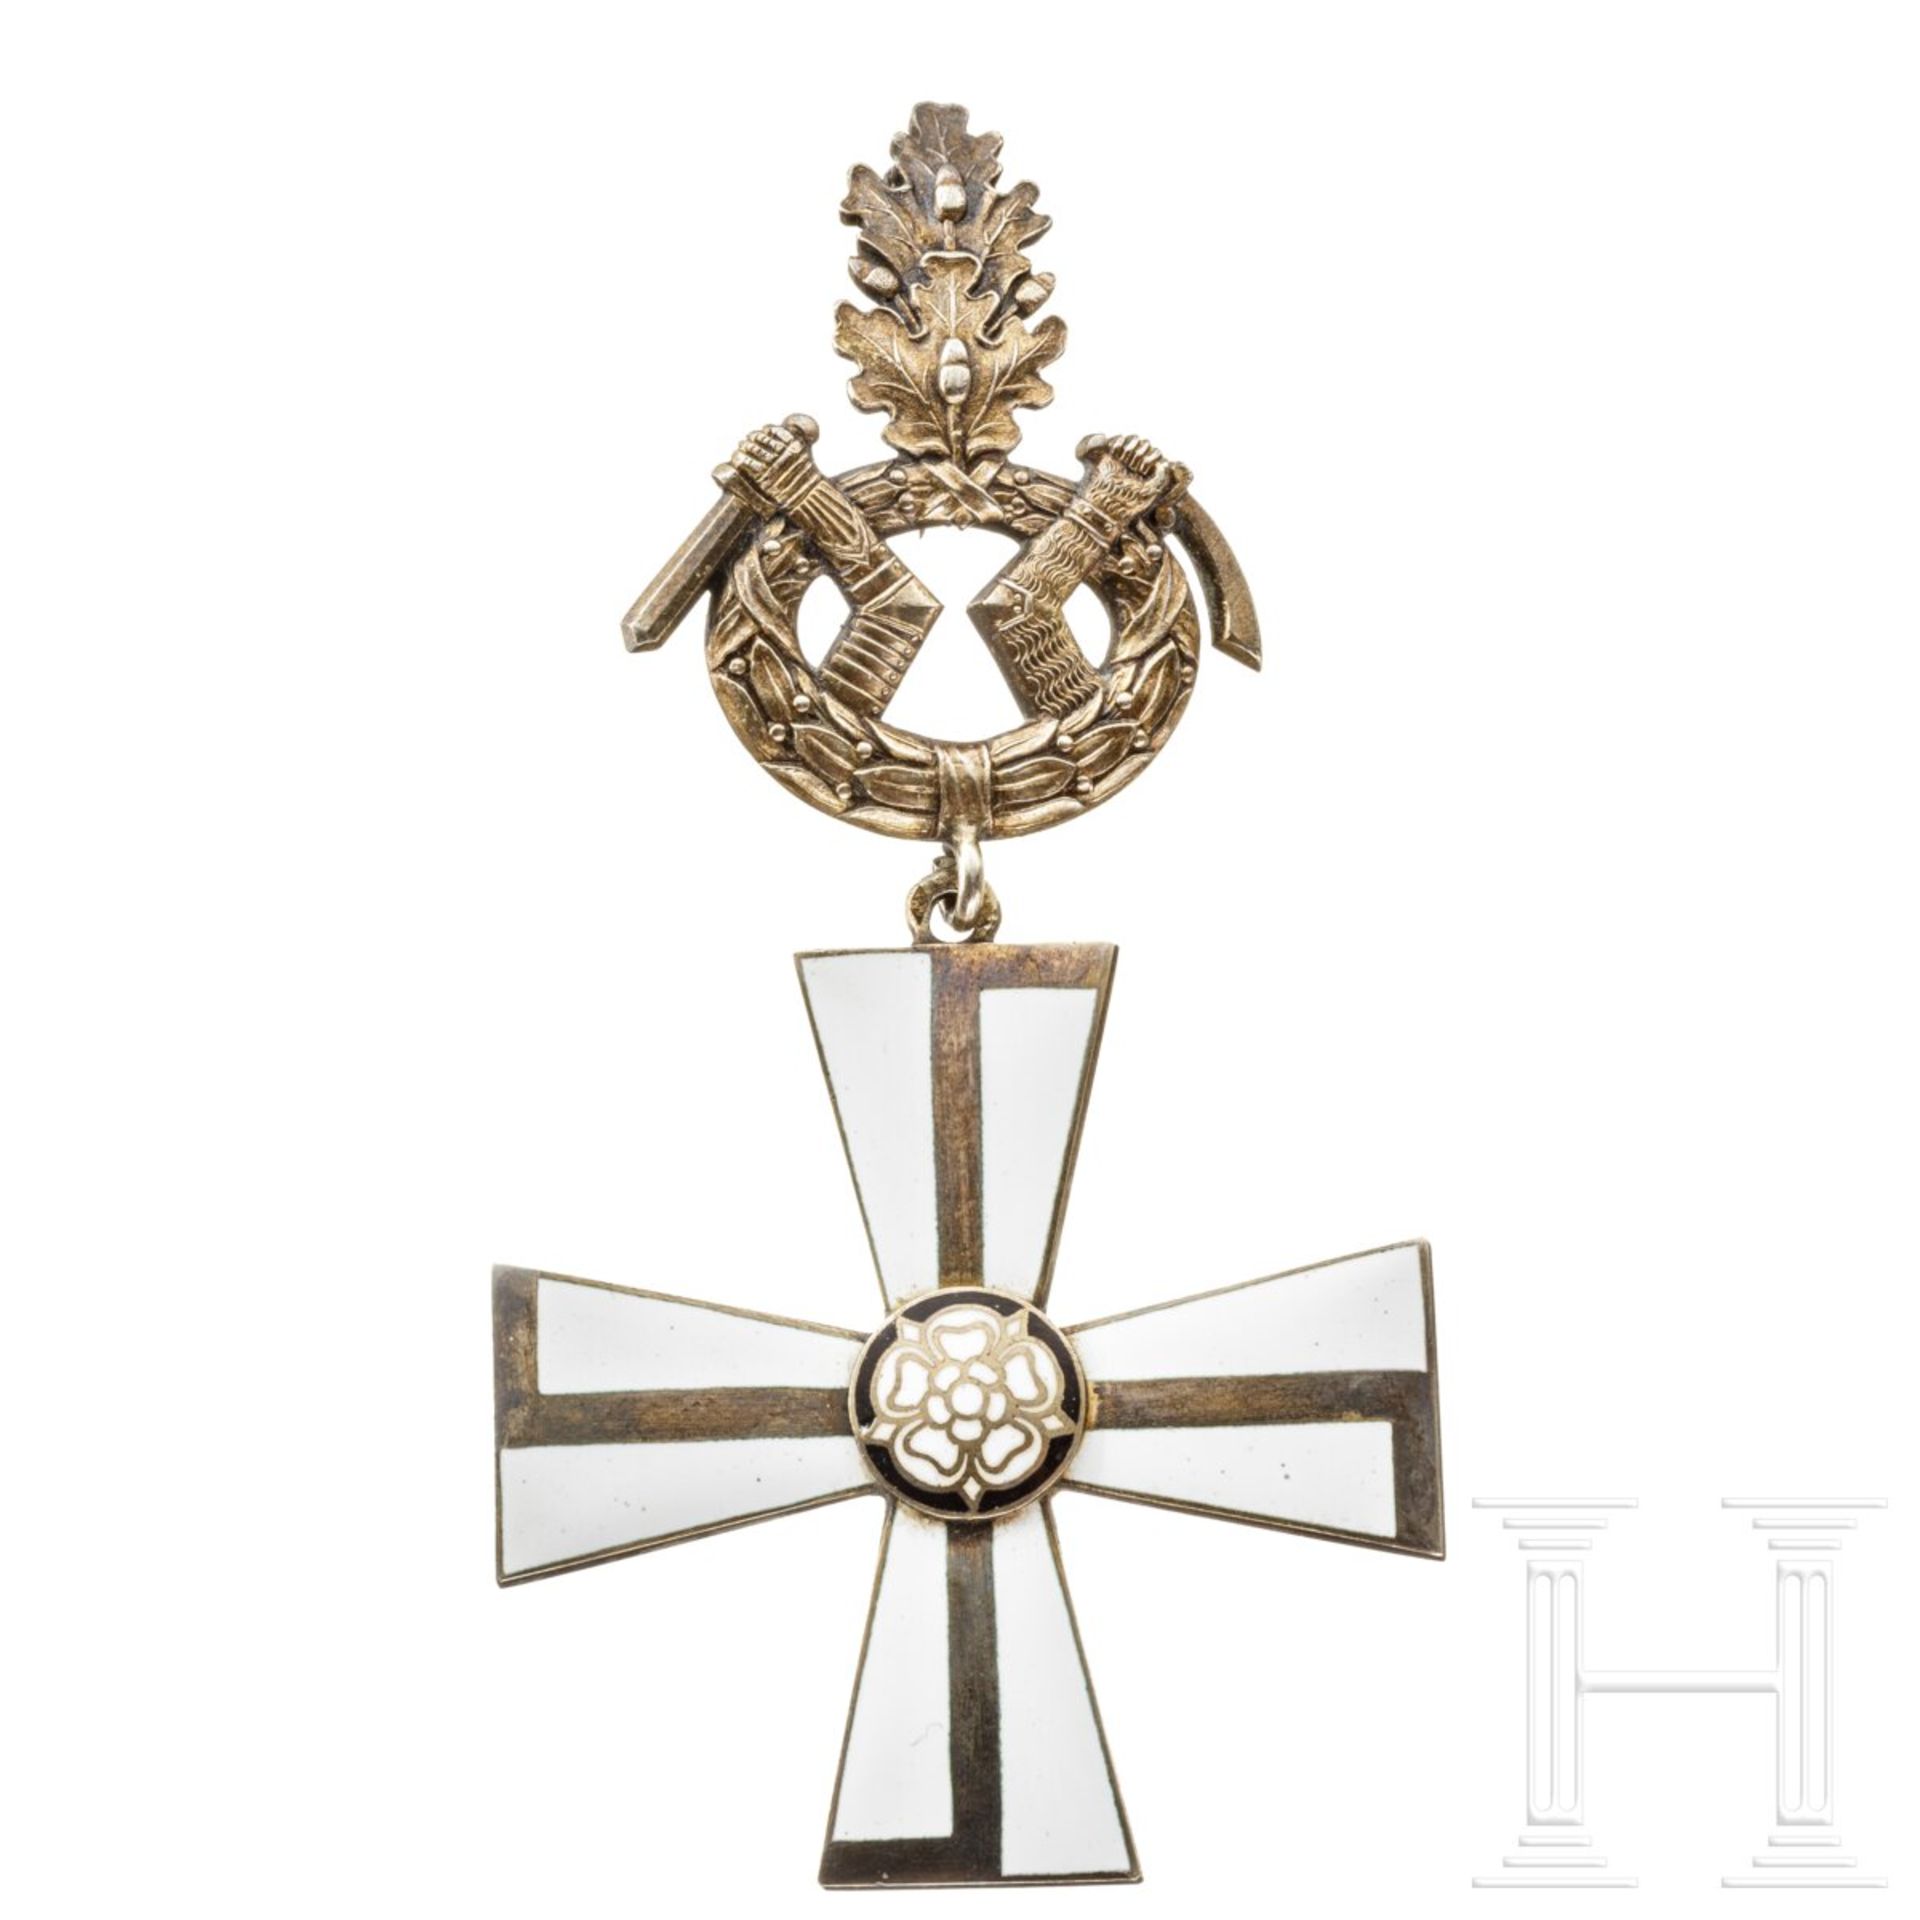 Finnischer Orden des Freiheitskreuzes - Kreuz 1. Klasse mit Eichenlaub und Schwertern - Image 5 of 8